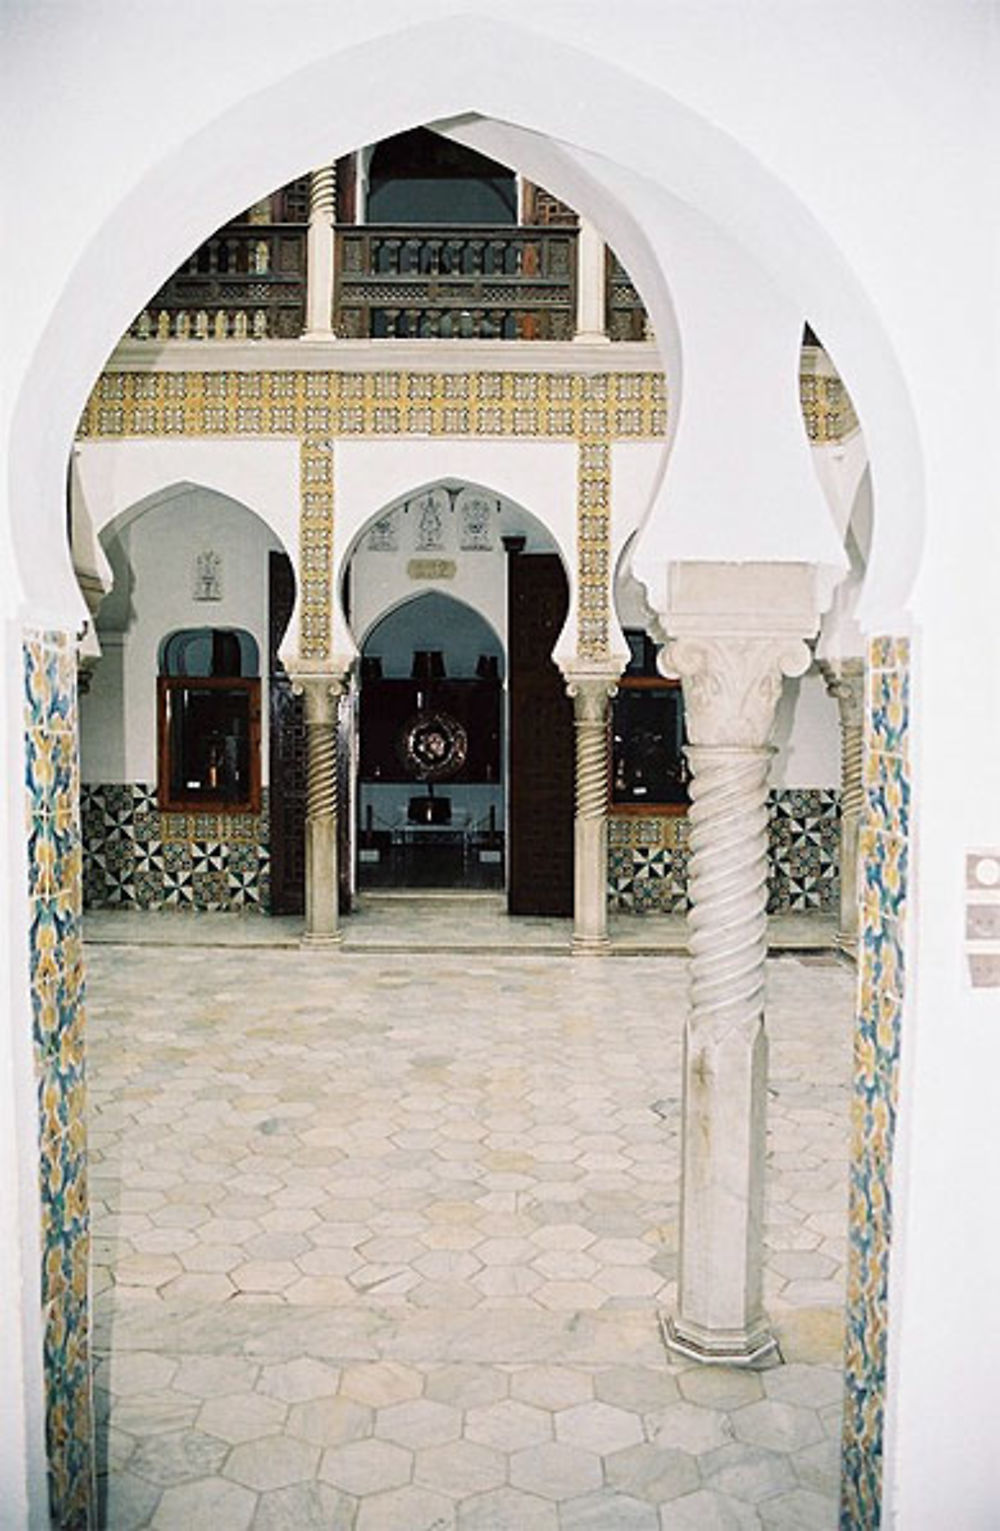 Le Musée National des Arts et Traditions Populaires d'Alger